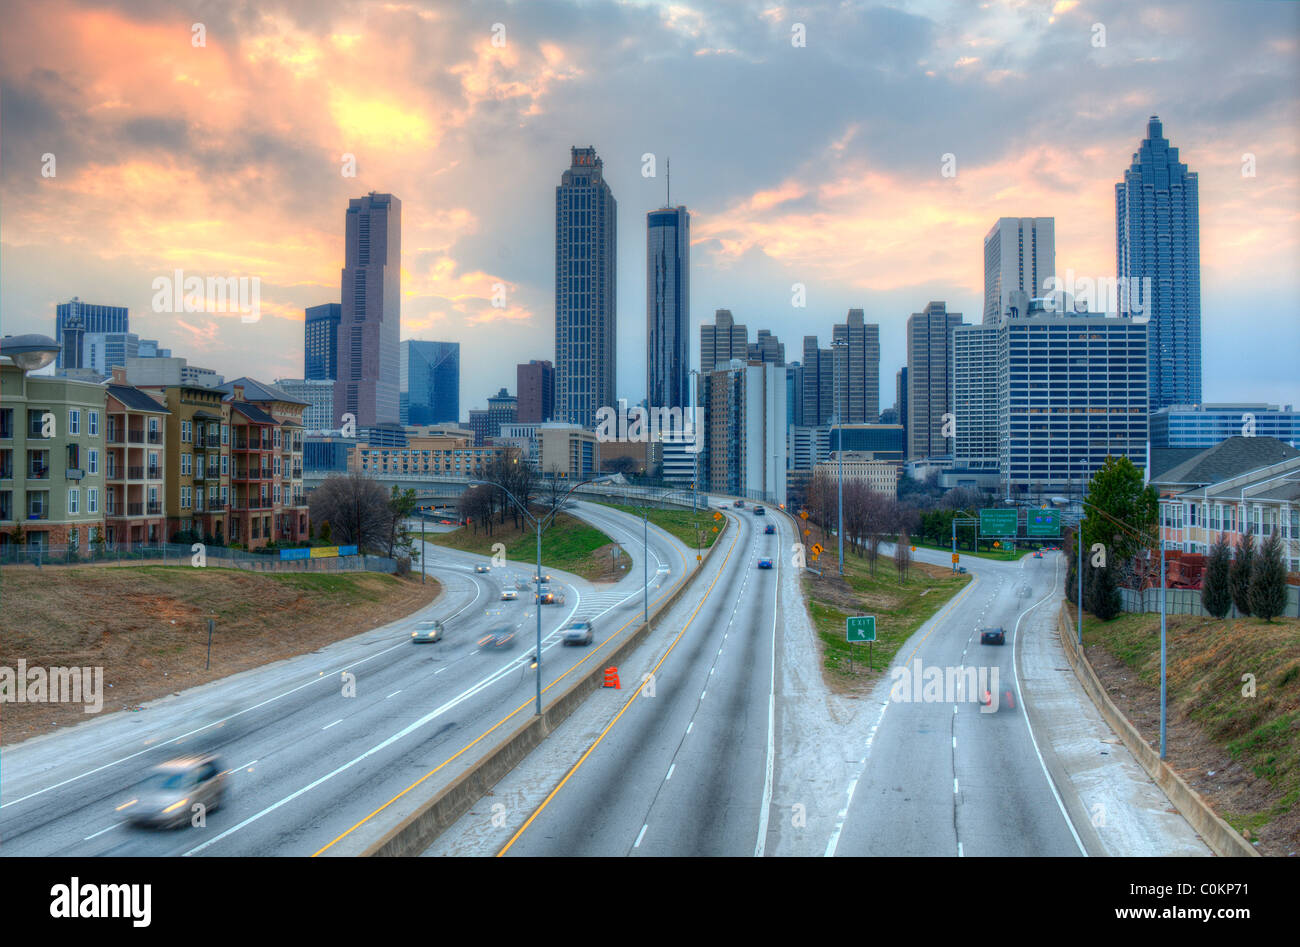 La Skyline d'Atlanta (Géorgie) au-dessus de la promenade de la Liberté en fin d'après-midi. Banque D'Images